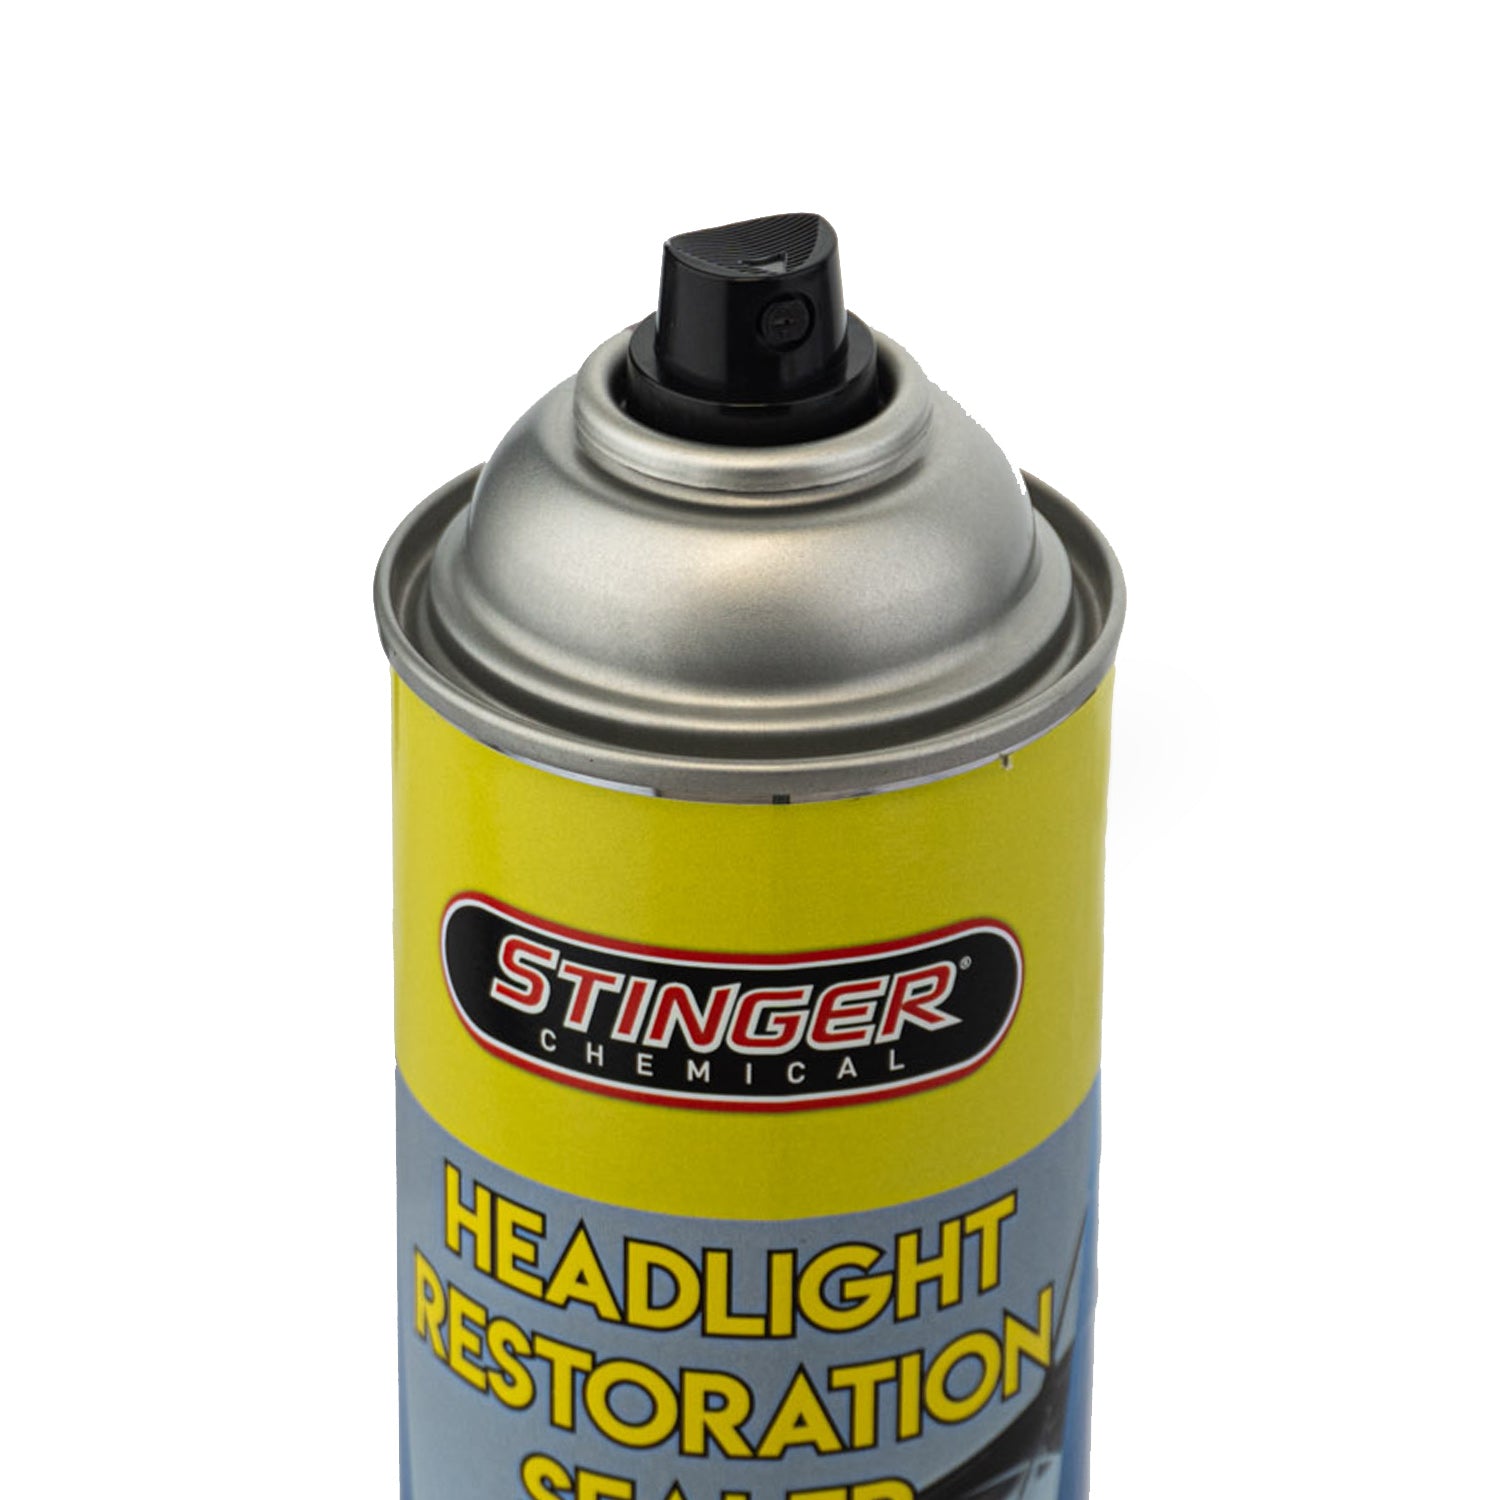 Stinger Chemical Headlight Restoration Sealer